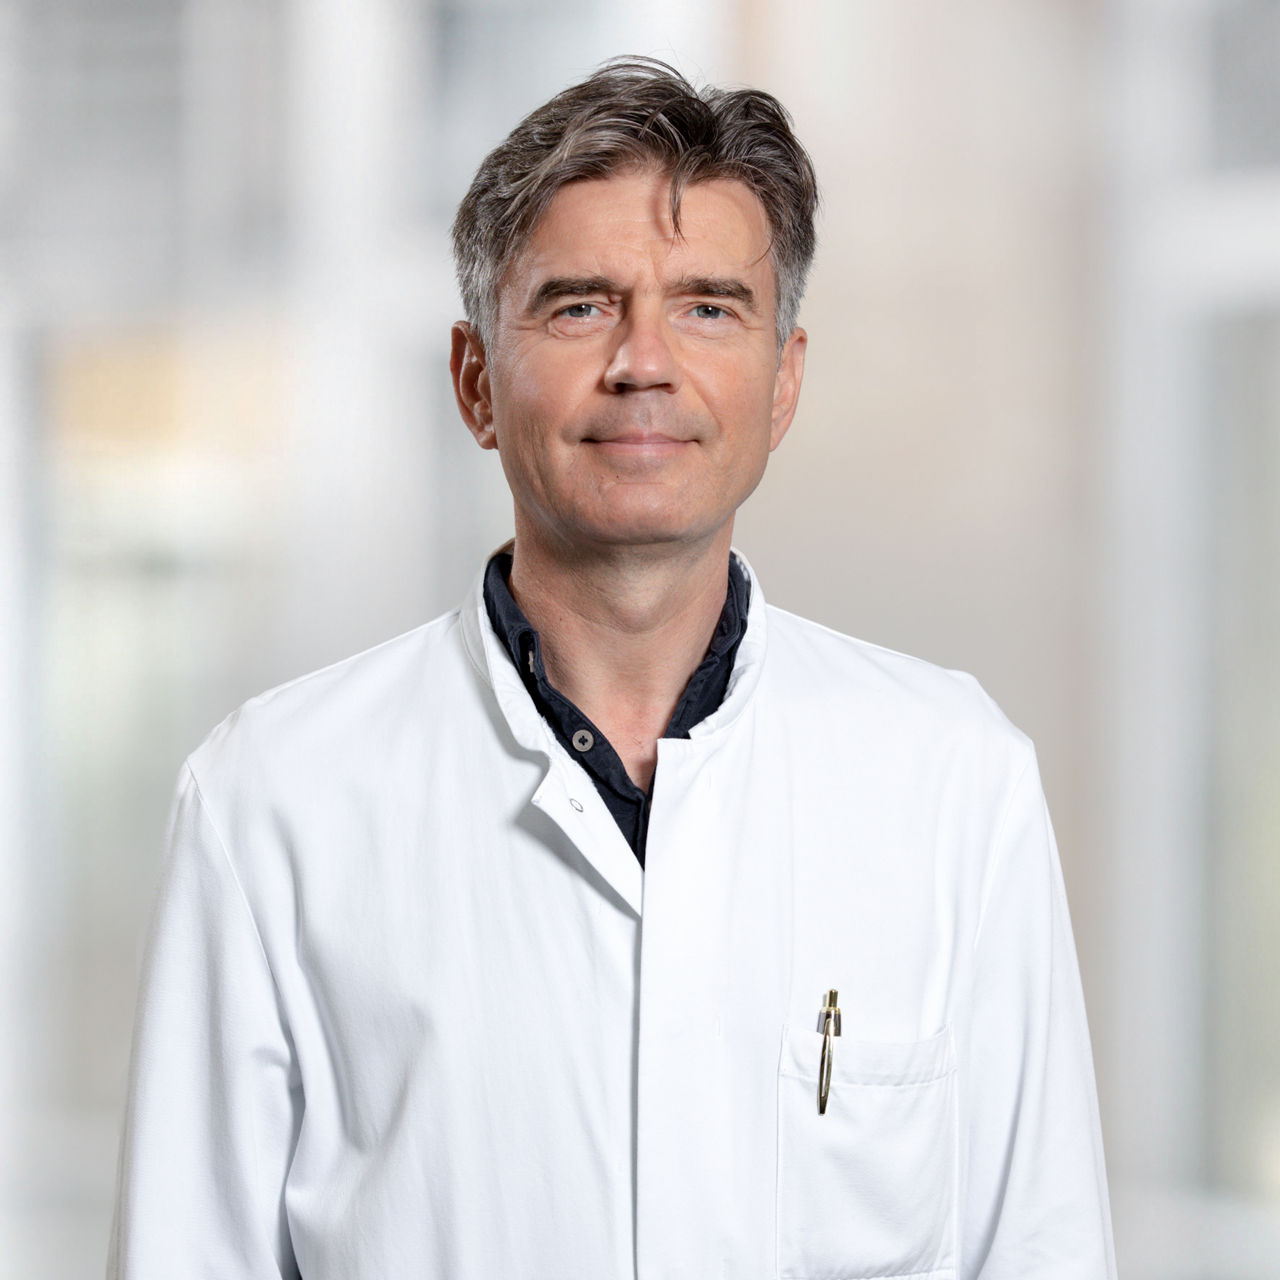 Dr. Jan Mochert